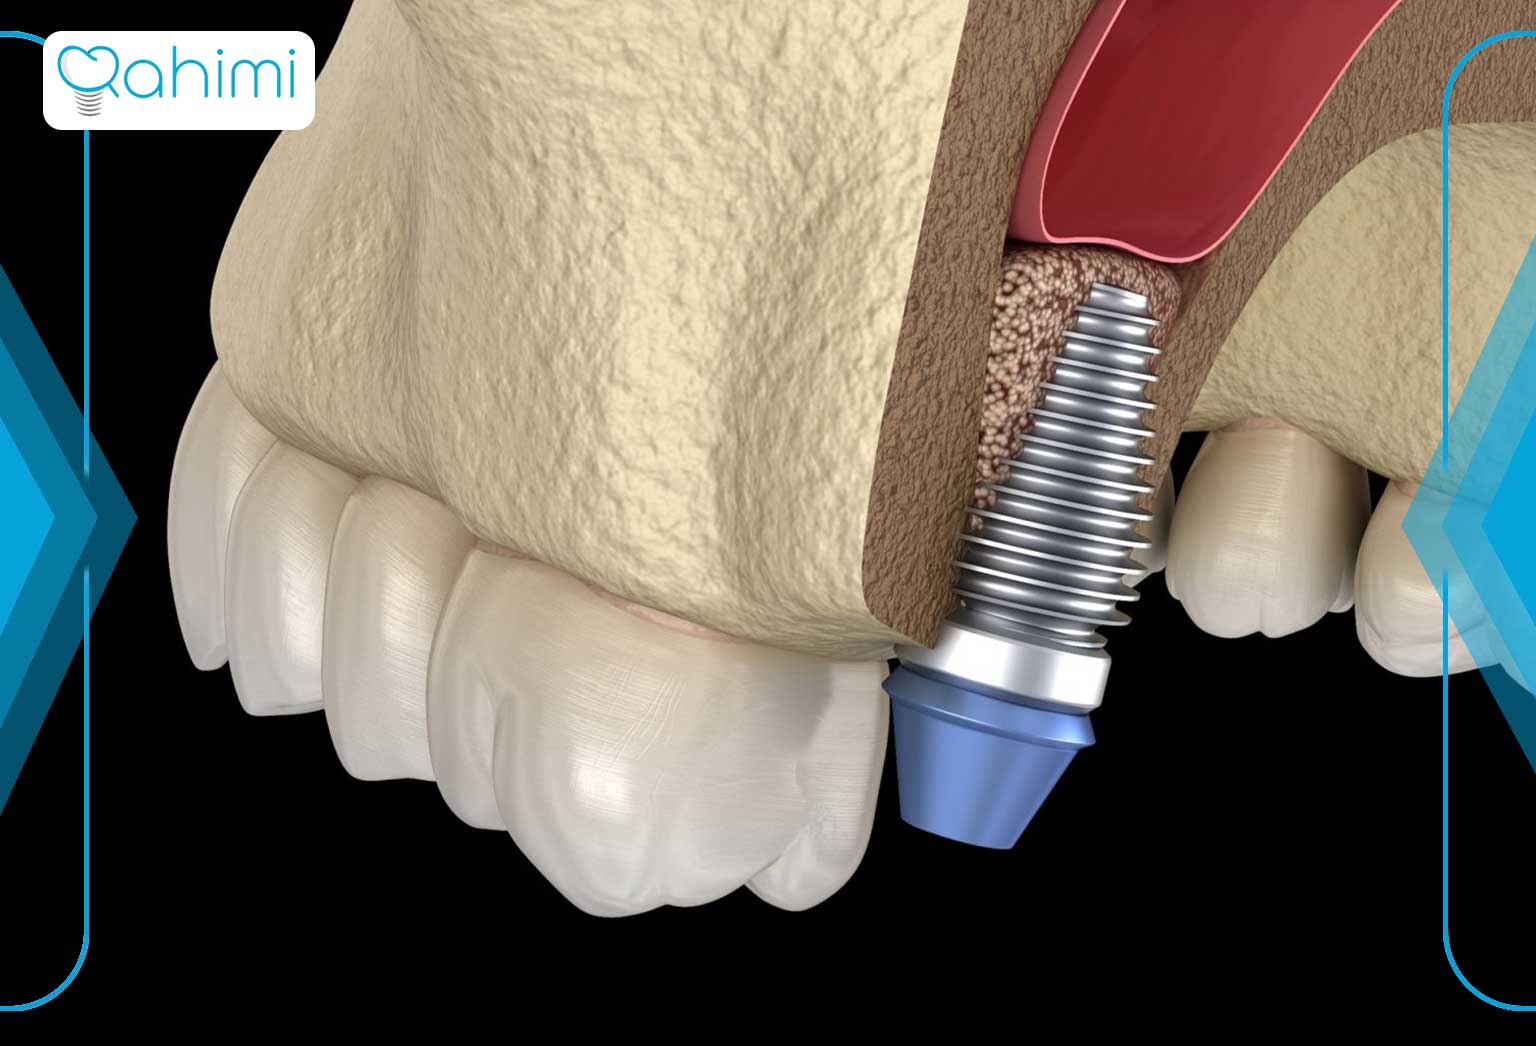 پیوند استخوان در ایمپلنت دندان